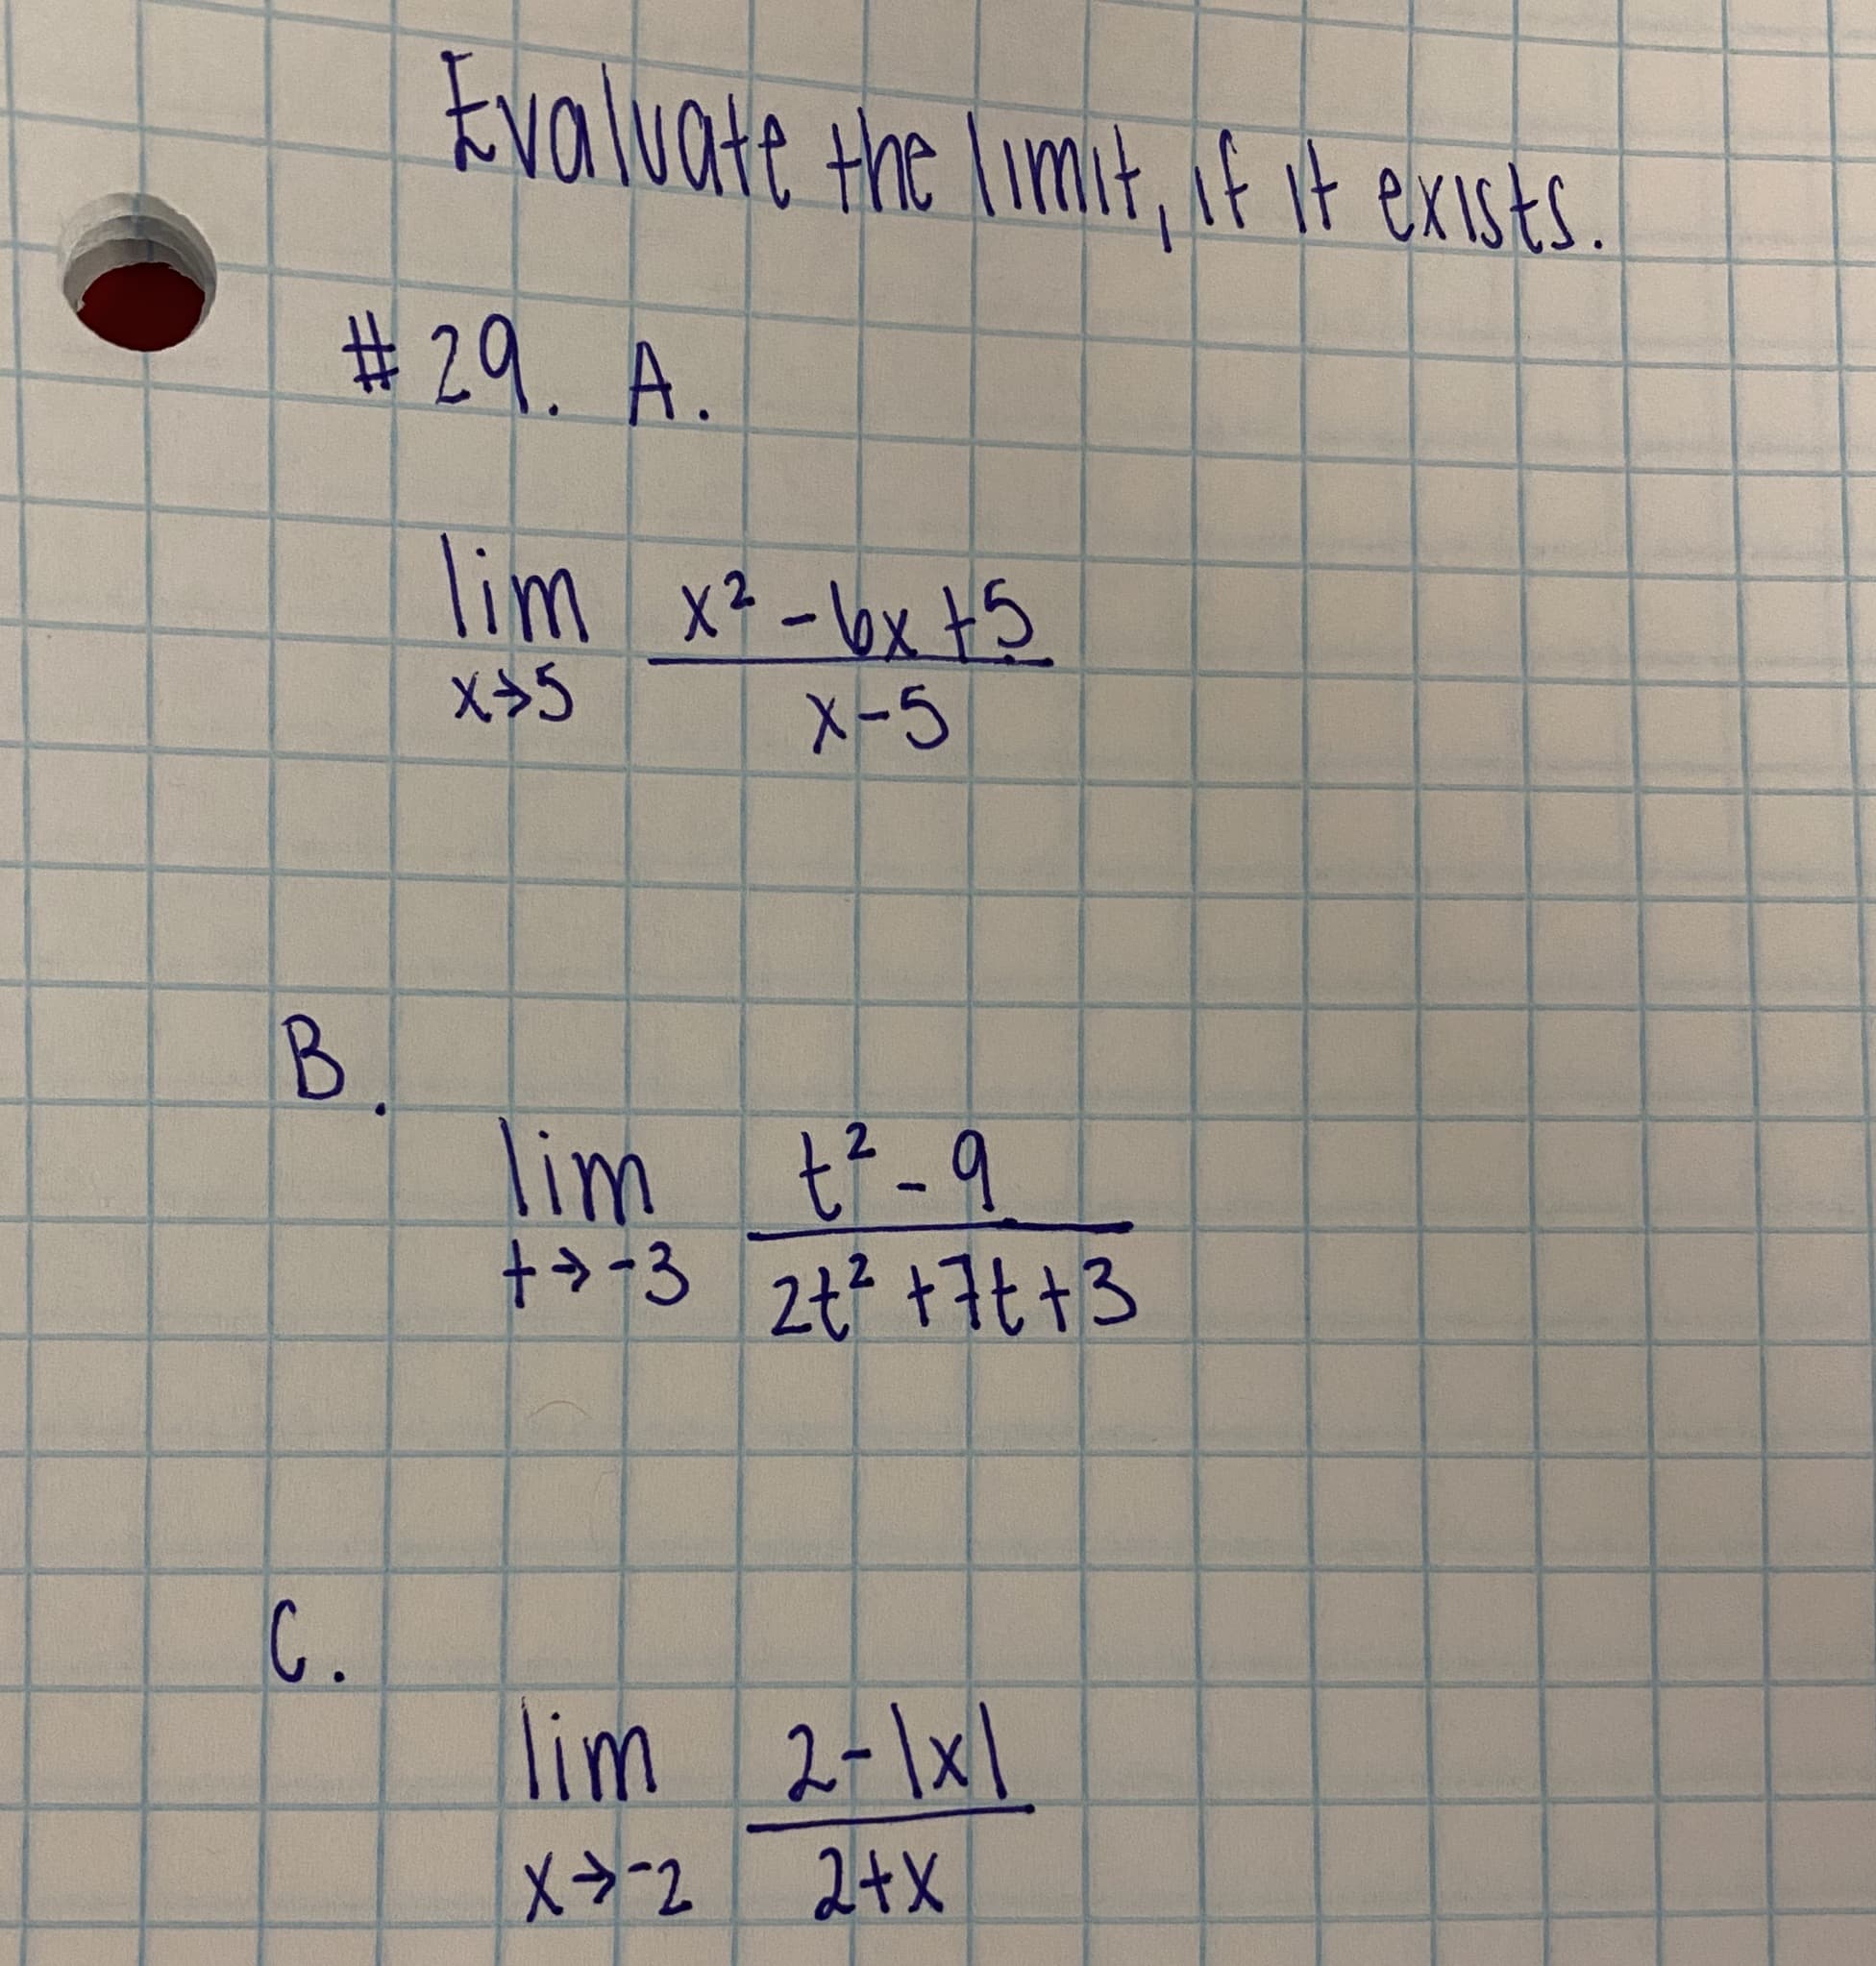 Evaluate Hoe Limit, E it exists.
#29. A.
lim x? -bx t5
X-5
B.
lim tf -9
>+3
2.
2t? +7t +3
C.
lim 2-\x1
2+X
